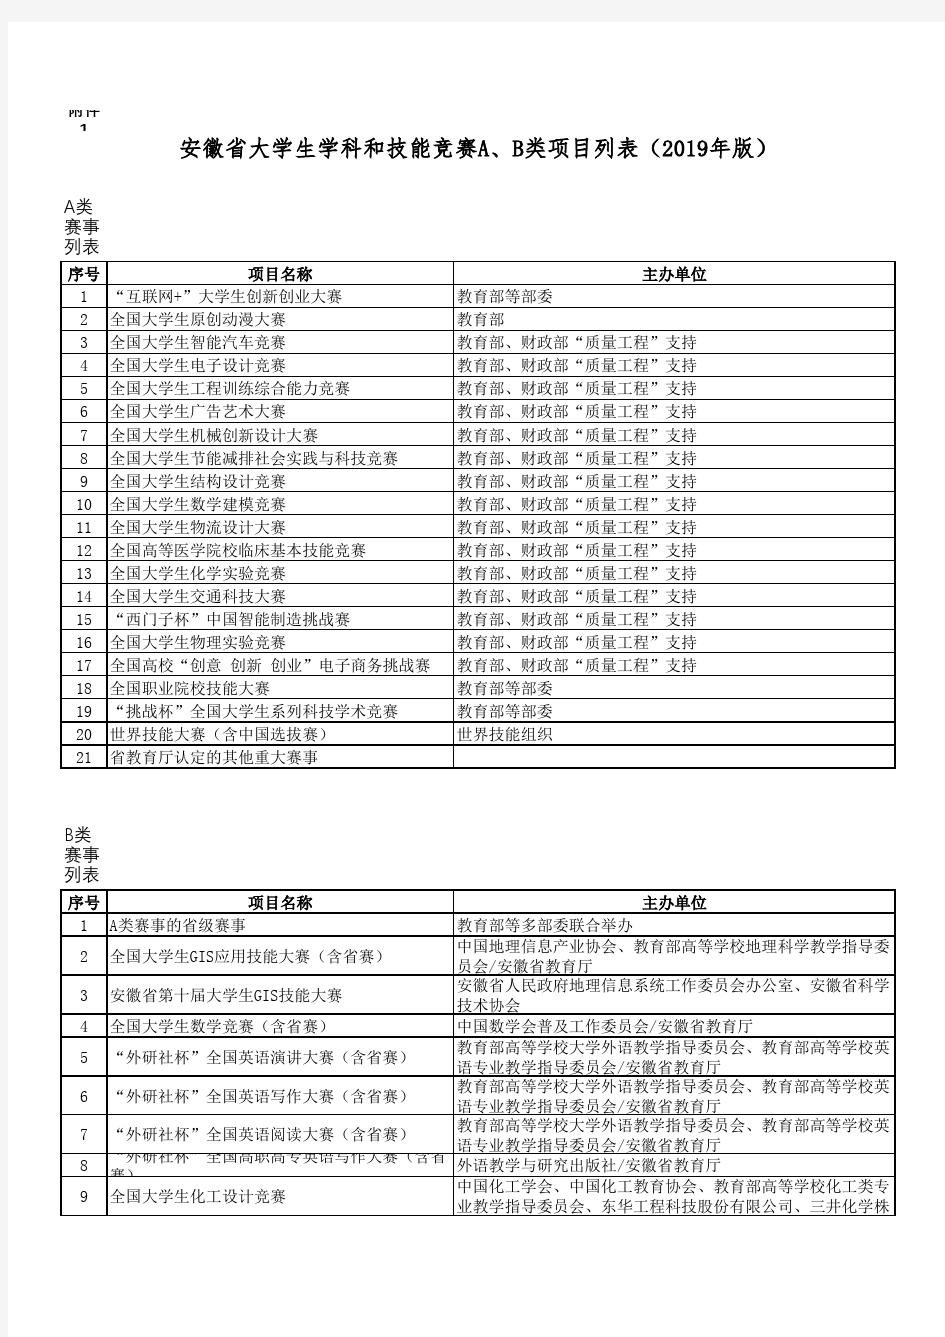 1.安徽省大学生学科和技能竞赛部分A、B类项目列表(2019年版)(最新)